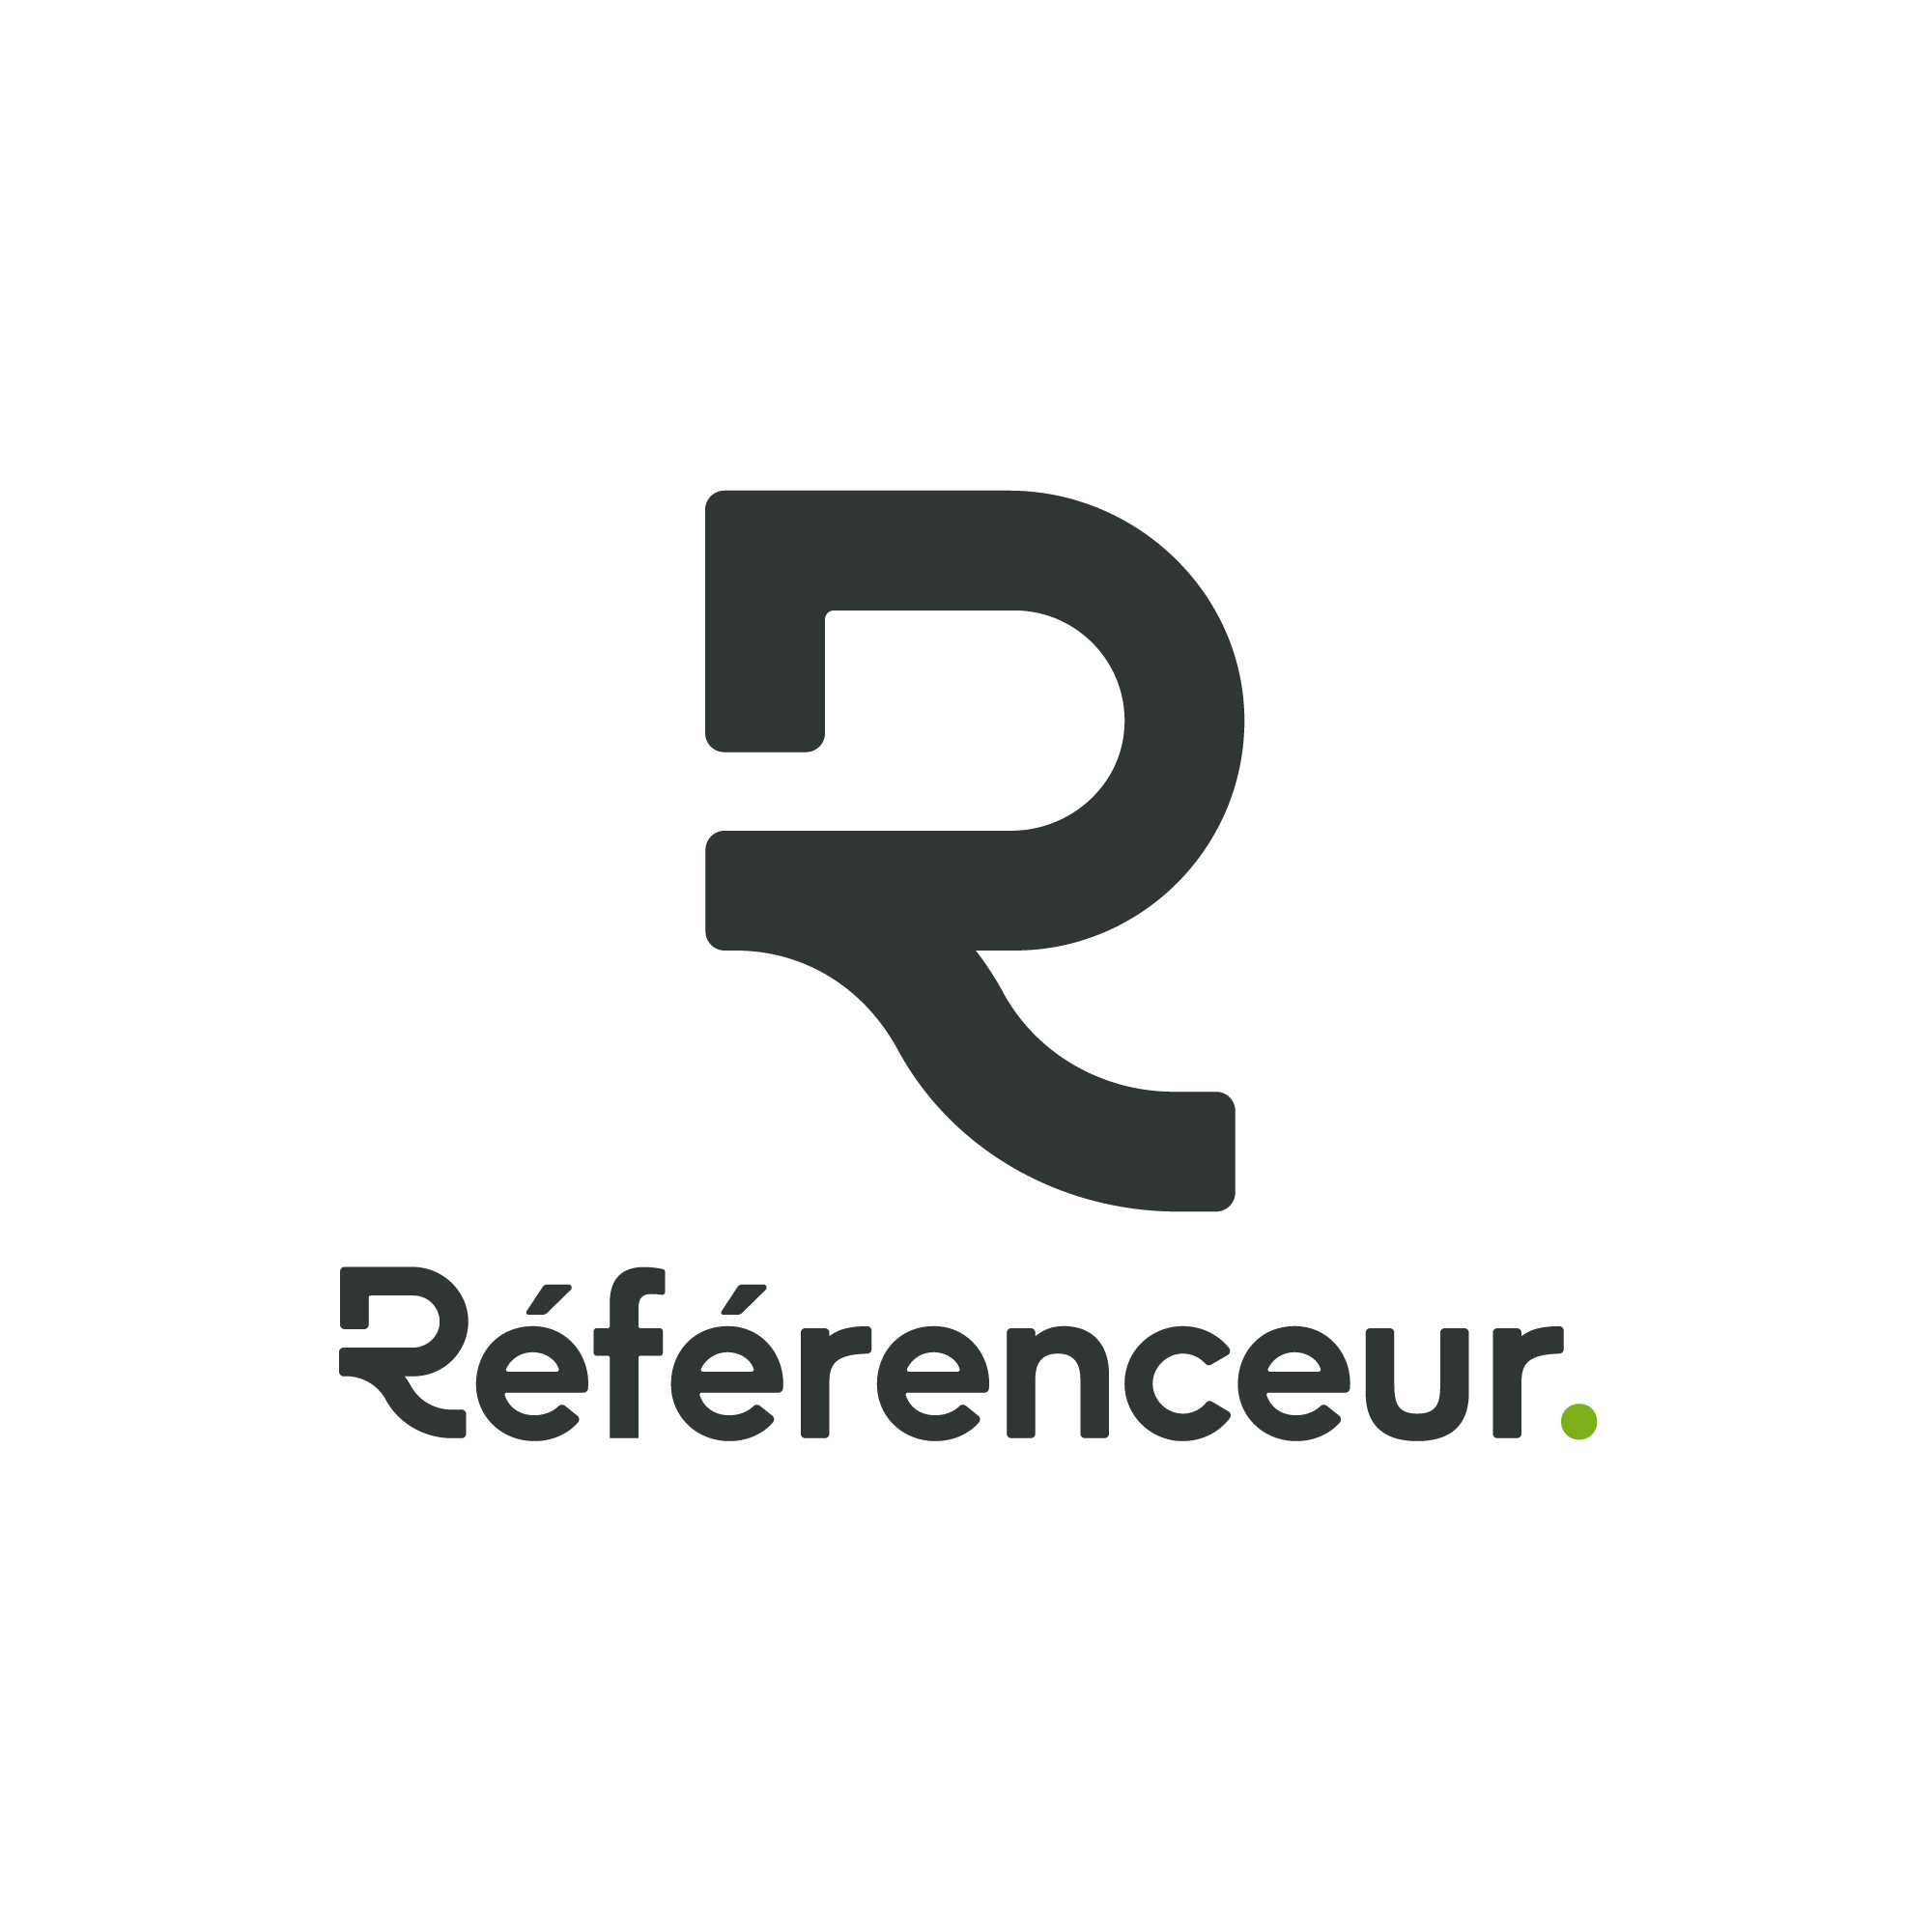 REFERENCEUR_logo_gris_vert.png